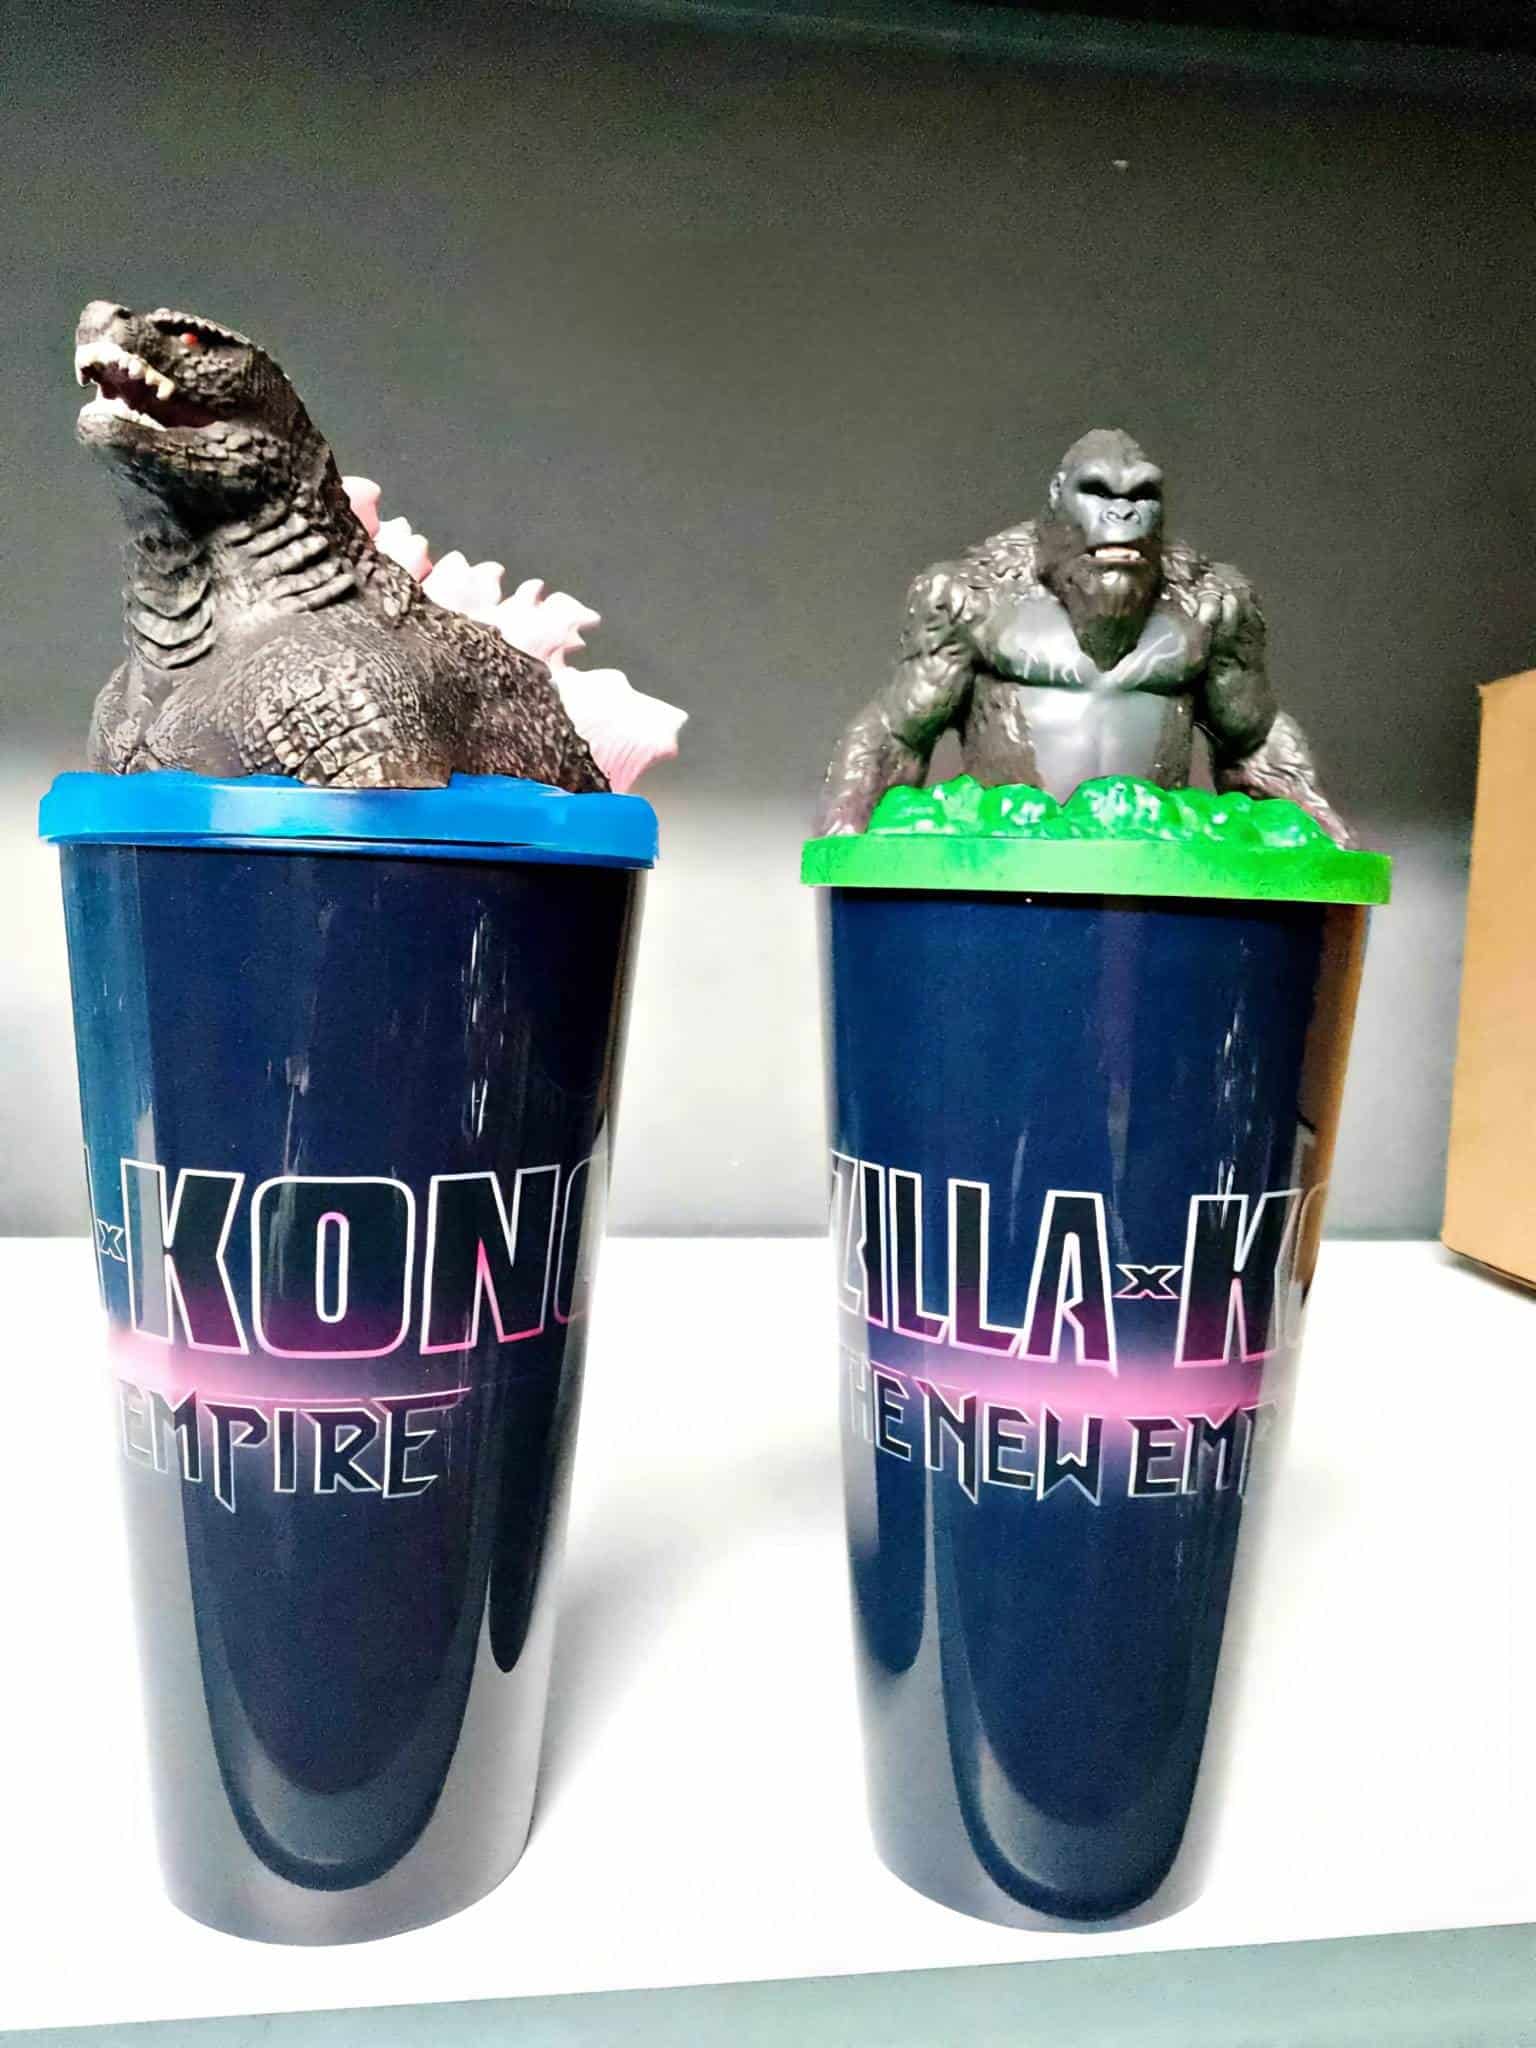 Precio y fecha de venta oficial de los vasos de Godzilla en Cinépolis